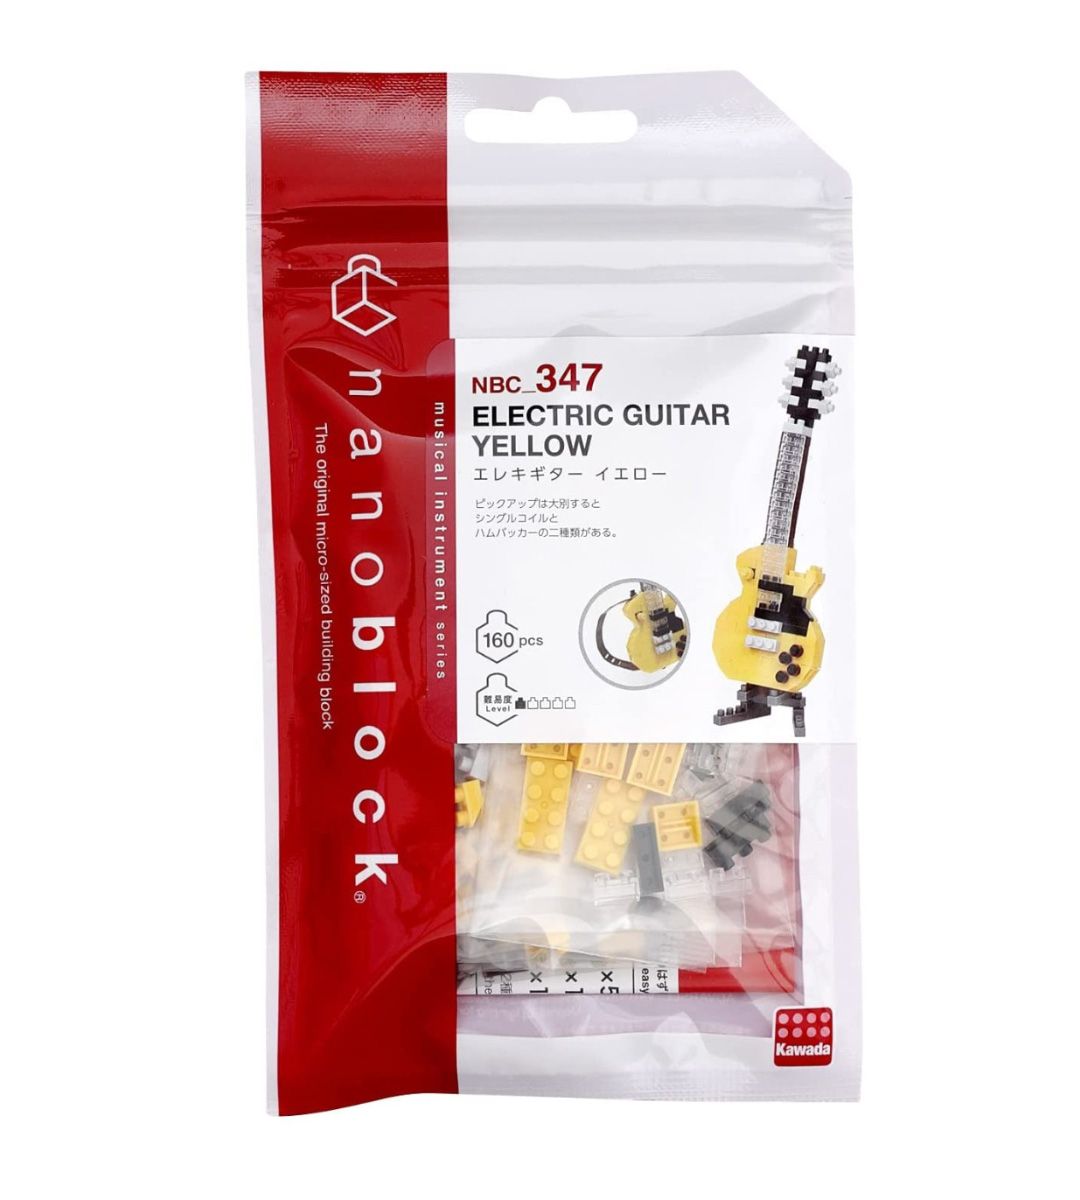 Nanoblock - Guitarra eléctrica Amarillo - NBC 347